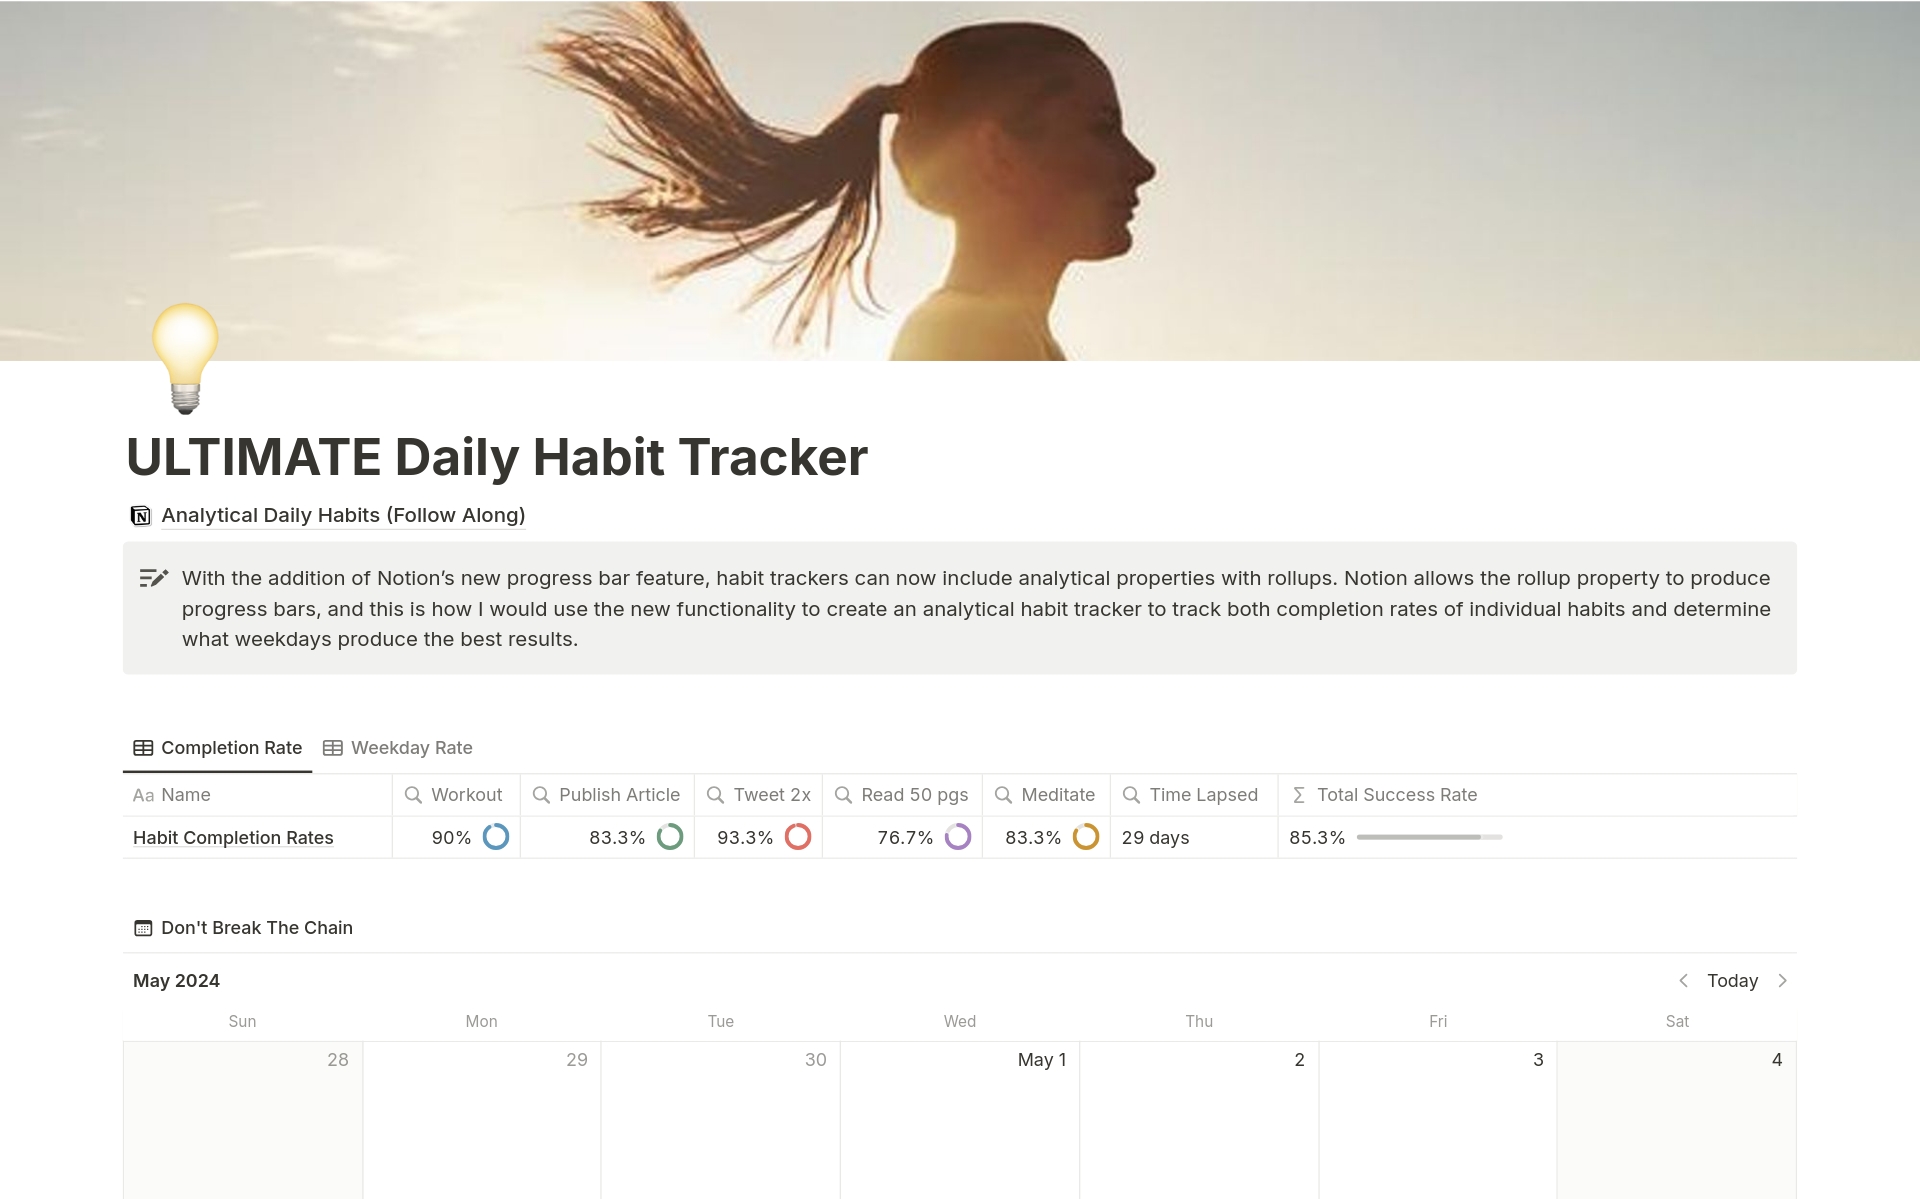 Uma prévia do modelo para ULTIMATE Daily Habit Tracker